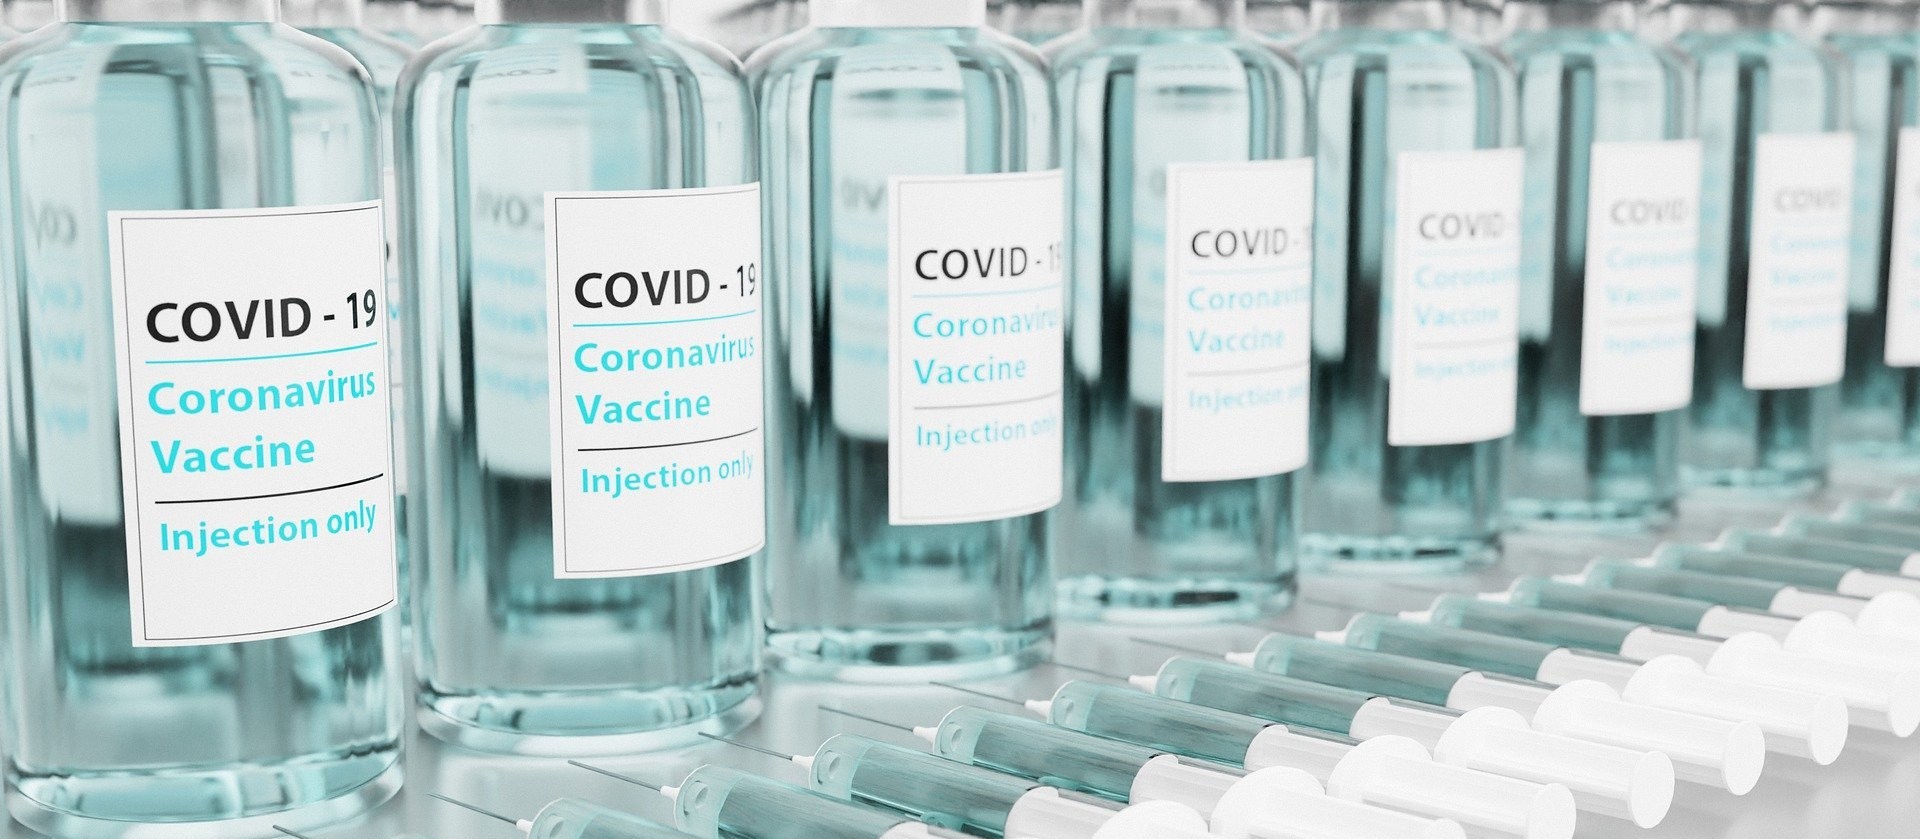 1ᵃ dose da vacina contra Covid-19 é suspensa em Cascavel 